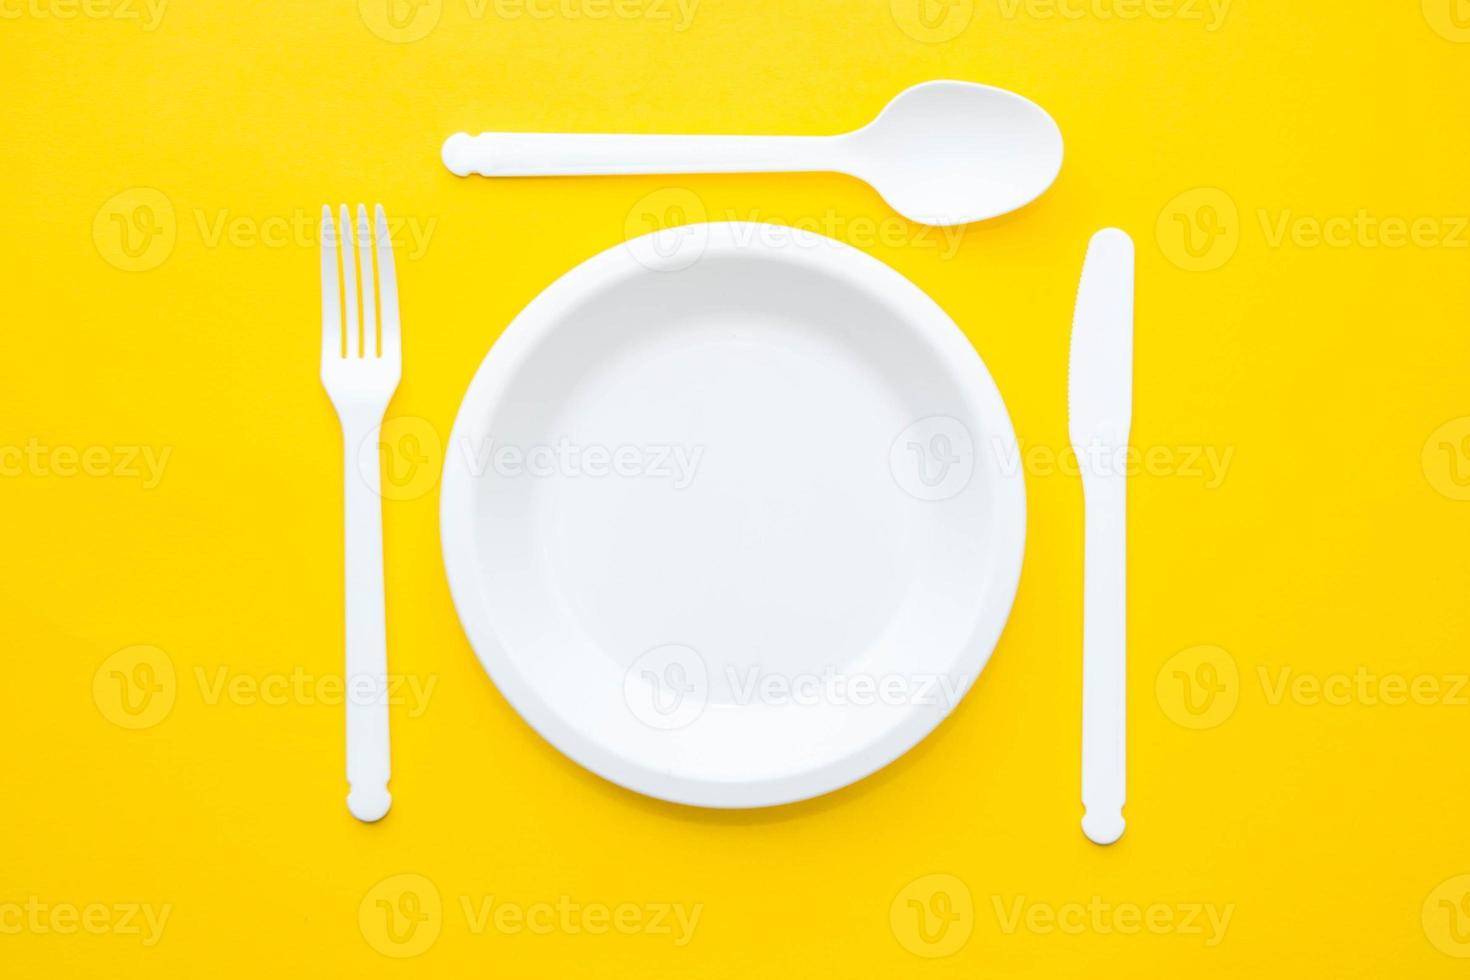 plast vit gaffel, kniv, sked och tallrik på gul bakgrund foto